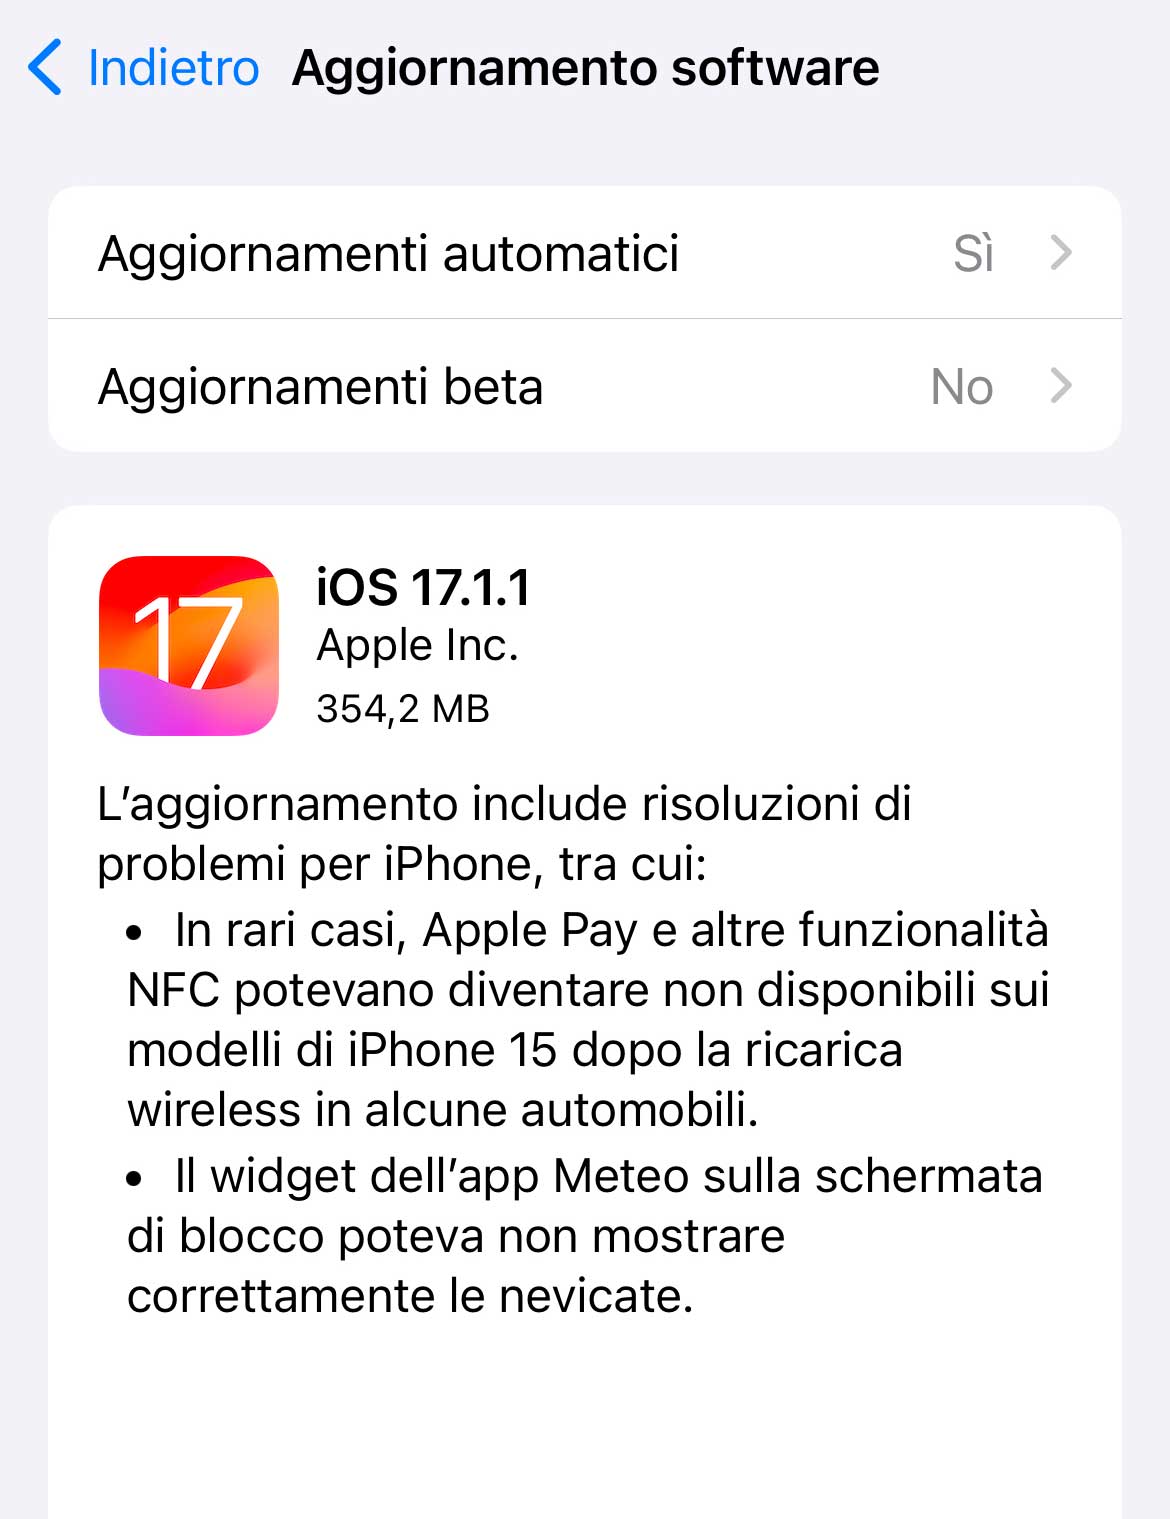 Disponibile aggiornamento a iOS 17.1.1, risolto bug con ricarica wireless BMW